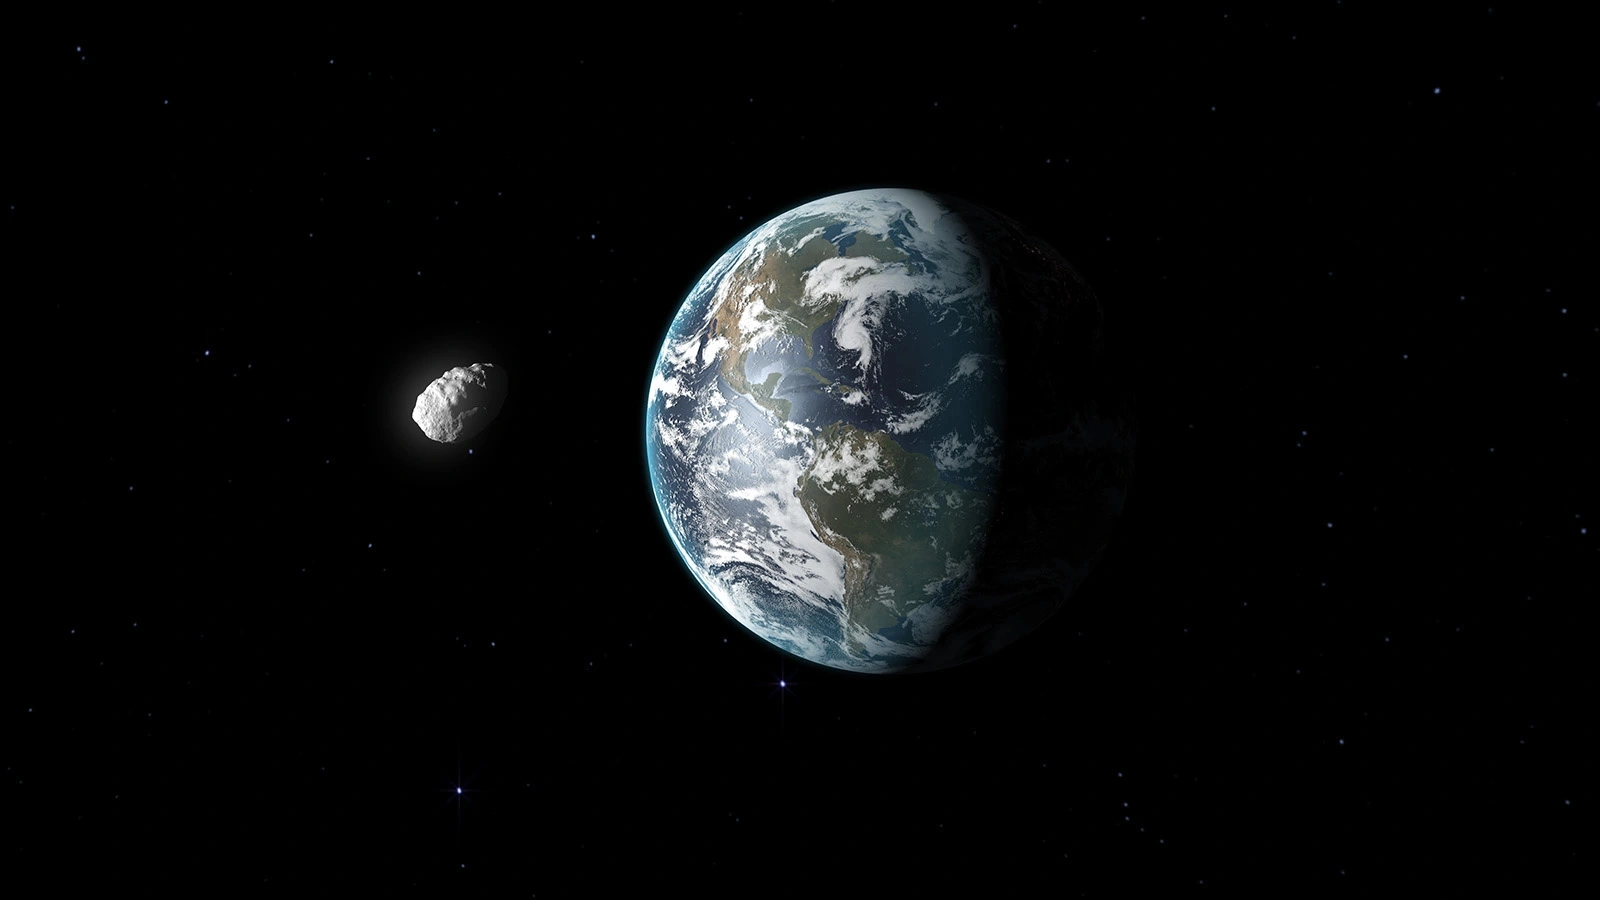 <p>Астероид Бенну, пролетающий поблизости от Земли, в представлении художника</p>